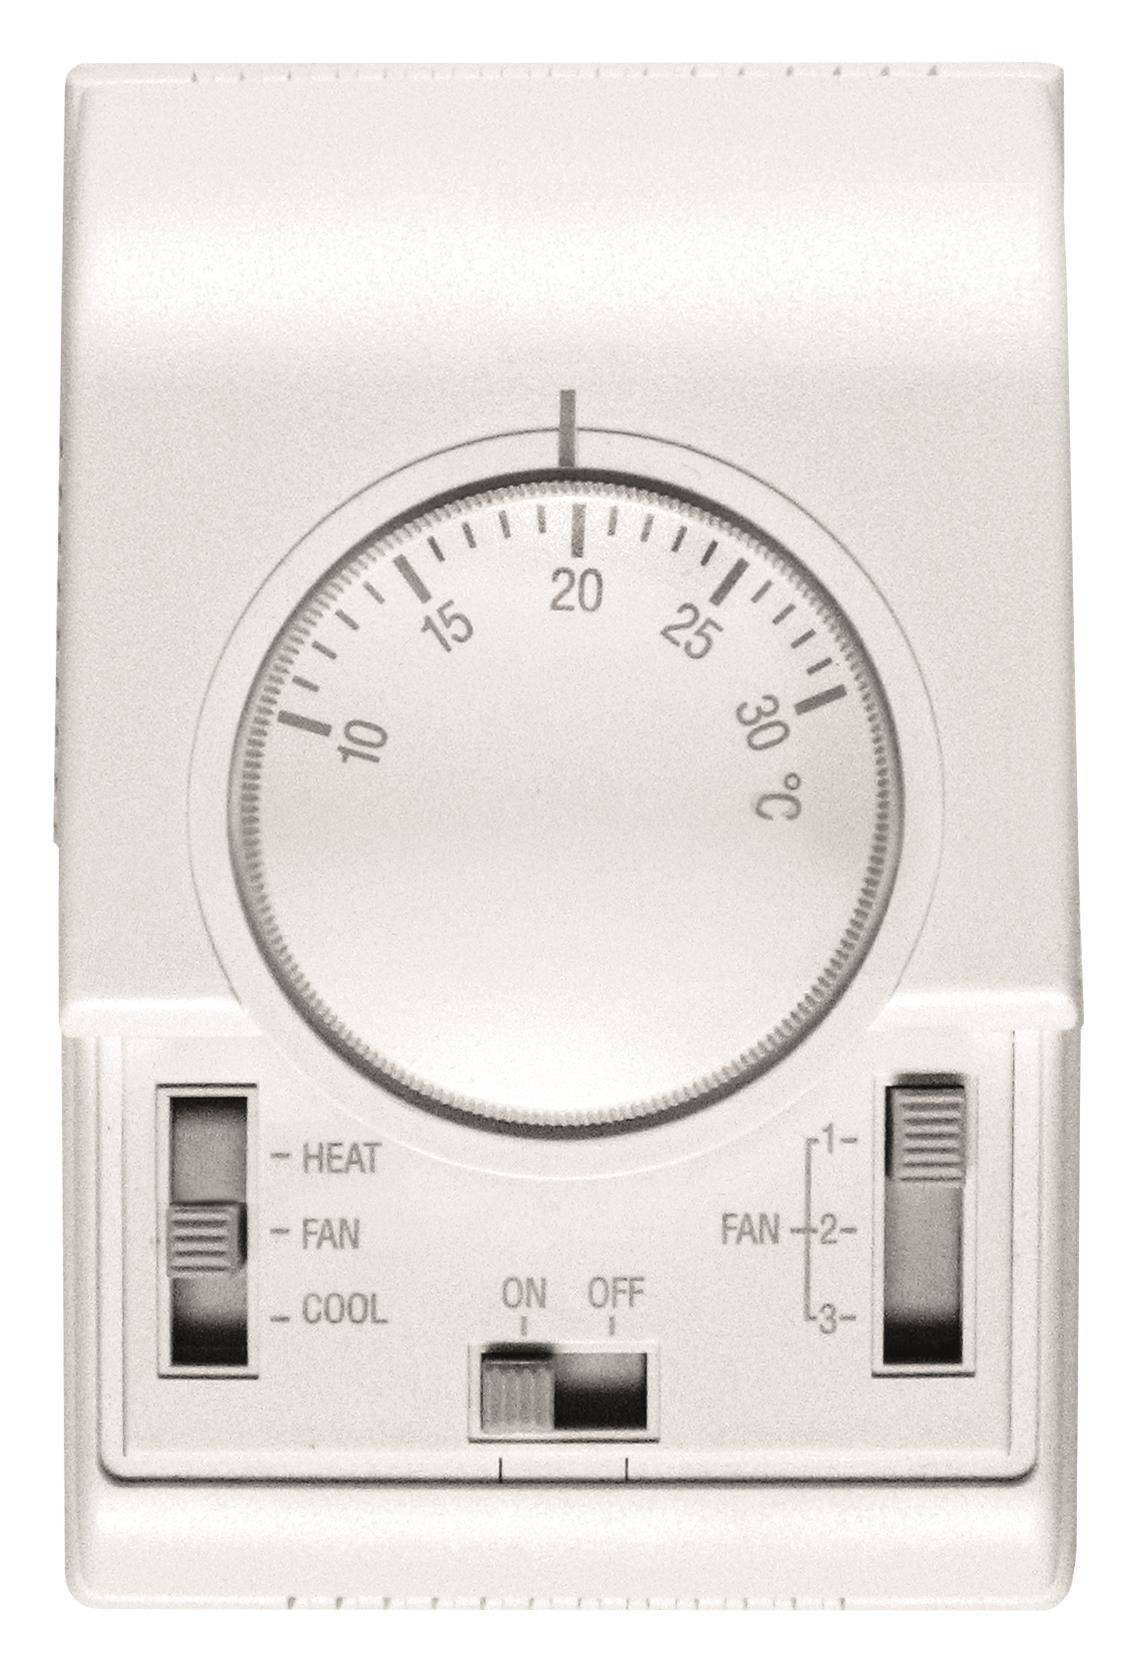 FLOWAIR LEO L1 32.3kW water heater + TS controller